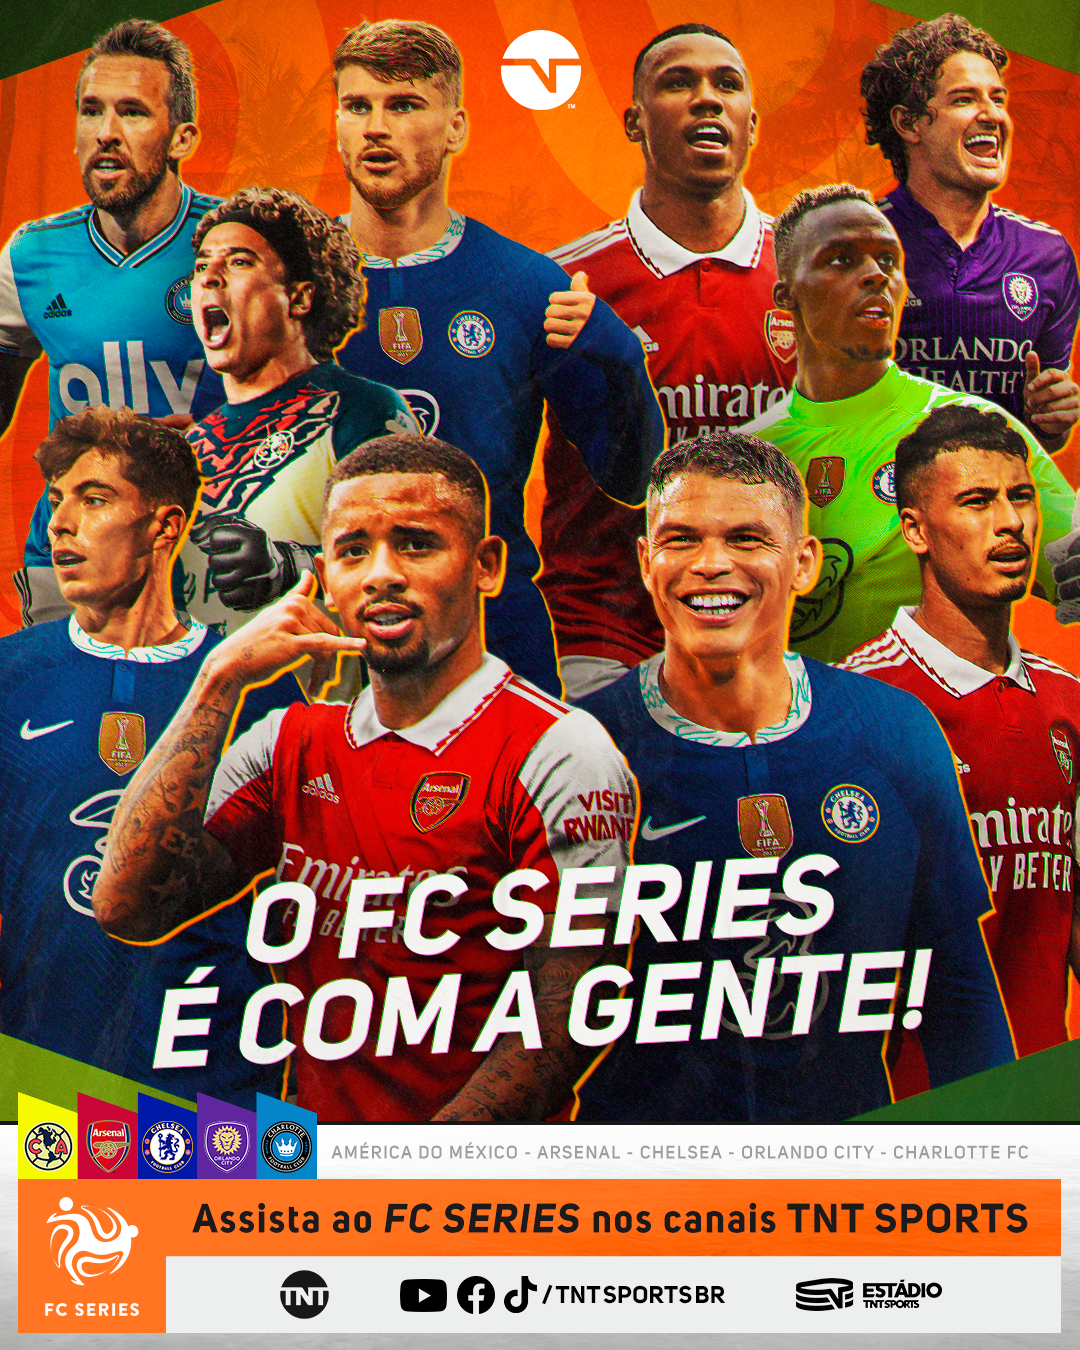 TNT Sports Brasil - DIA DE PREMIER LEAGUE! 🏆 Pela competição inglesa,  quatro times fazem dois JOGÕES nesse sábado! E aí, você ARRISCA qual vai  ser o placar desses jogos? Então, seu